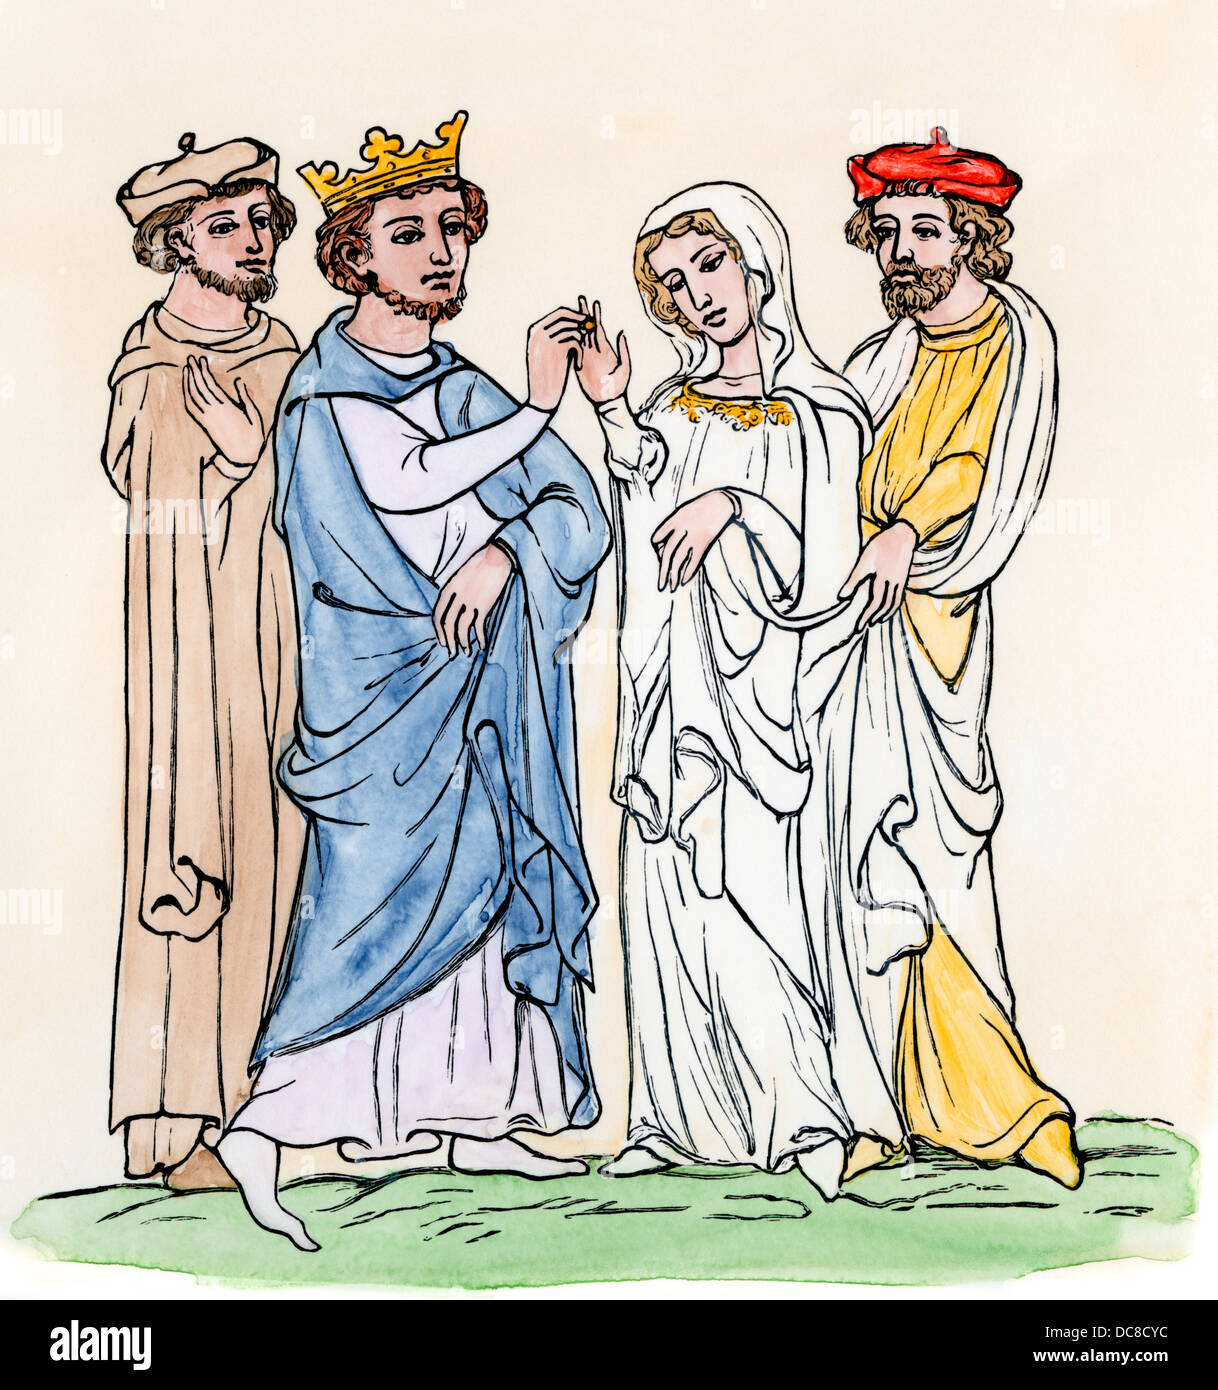 Mariage d'un roi et la reine au Moyen Âge. À la main, gravure sur bois Banque D'Images